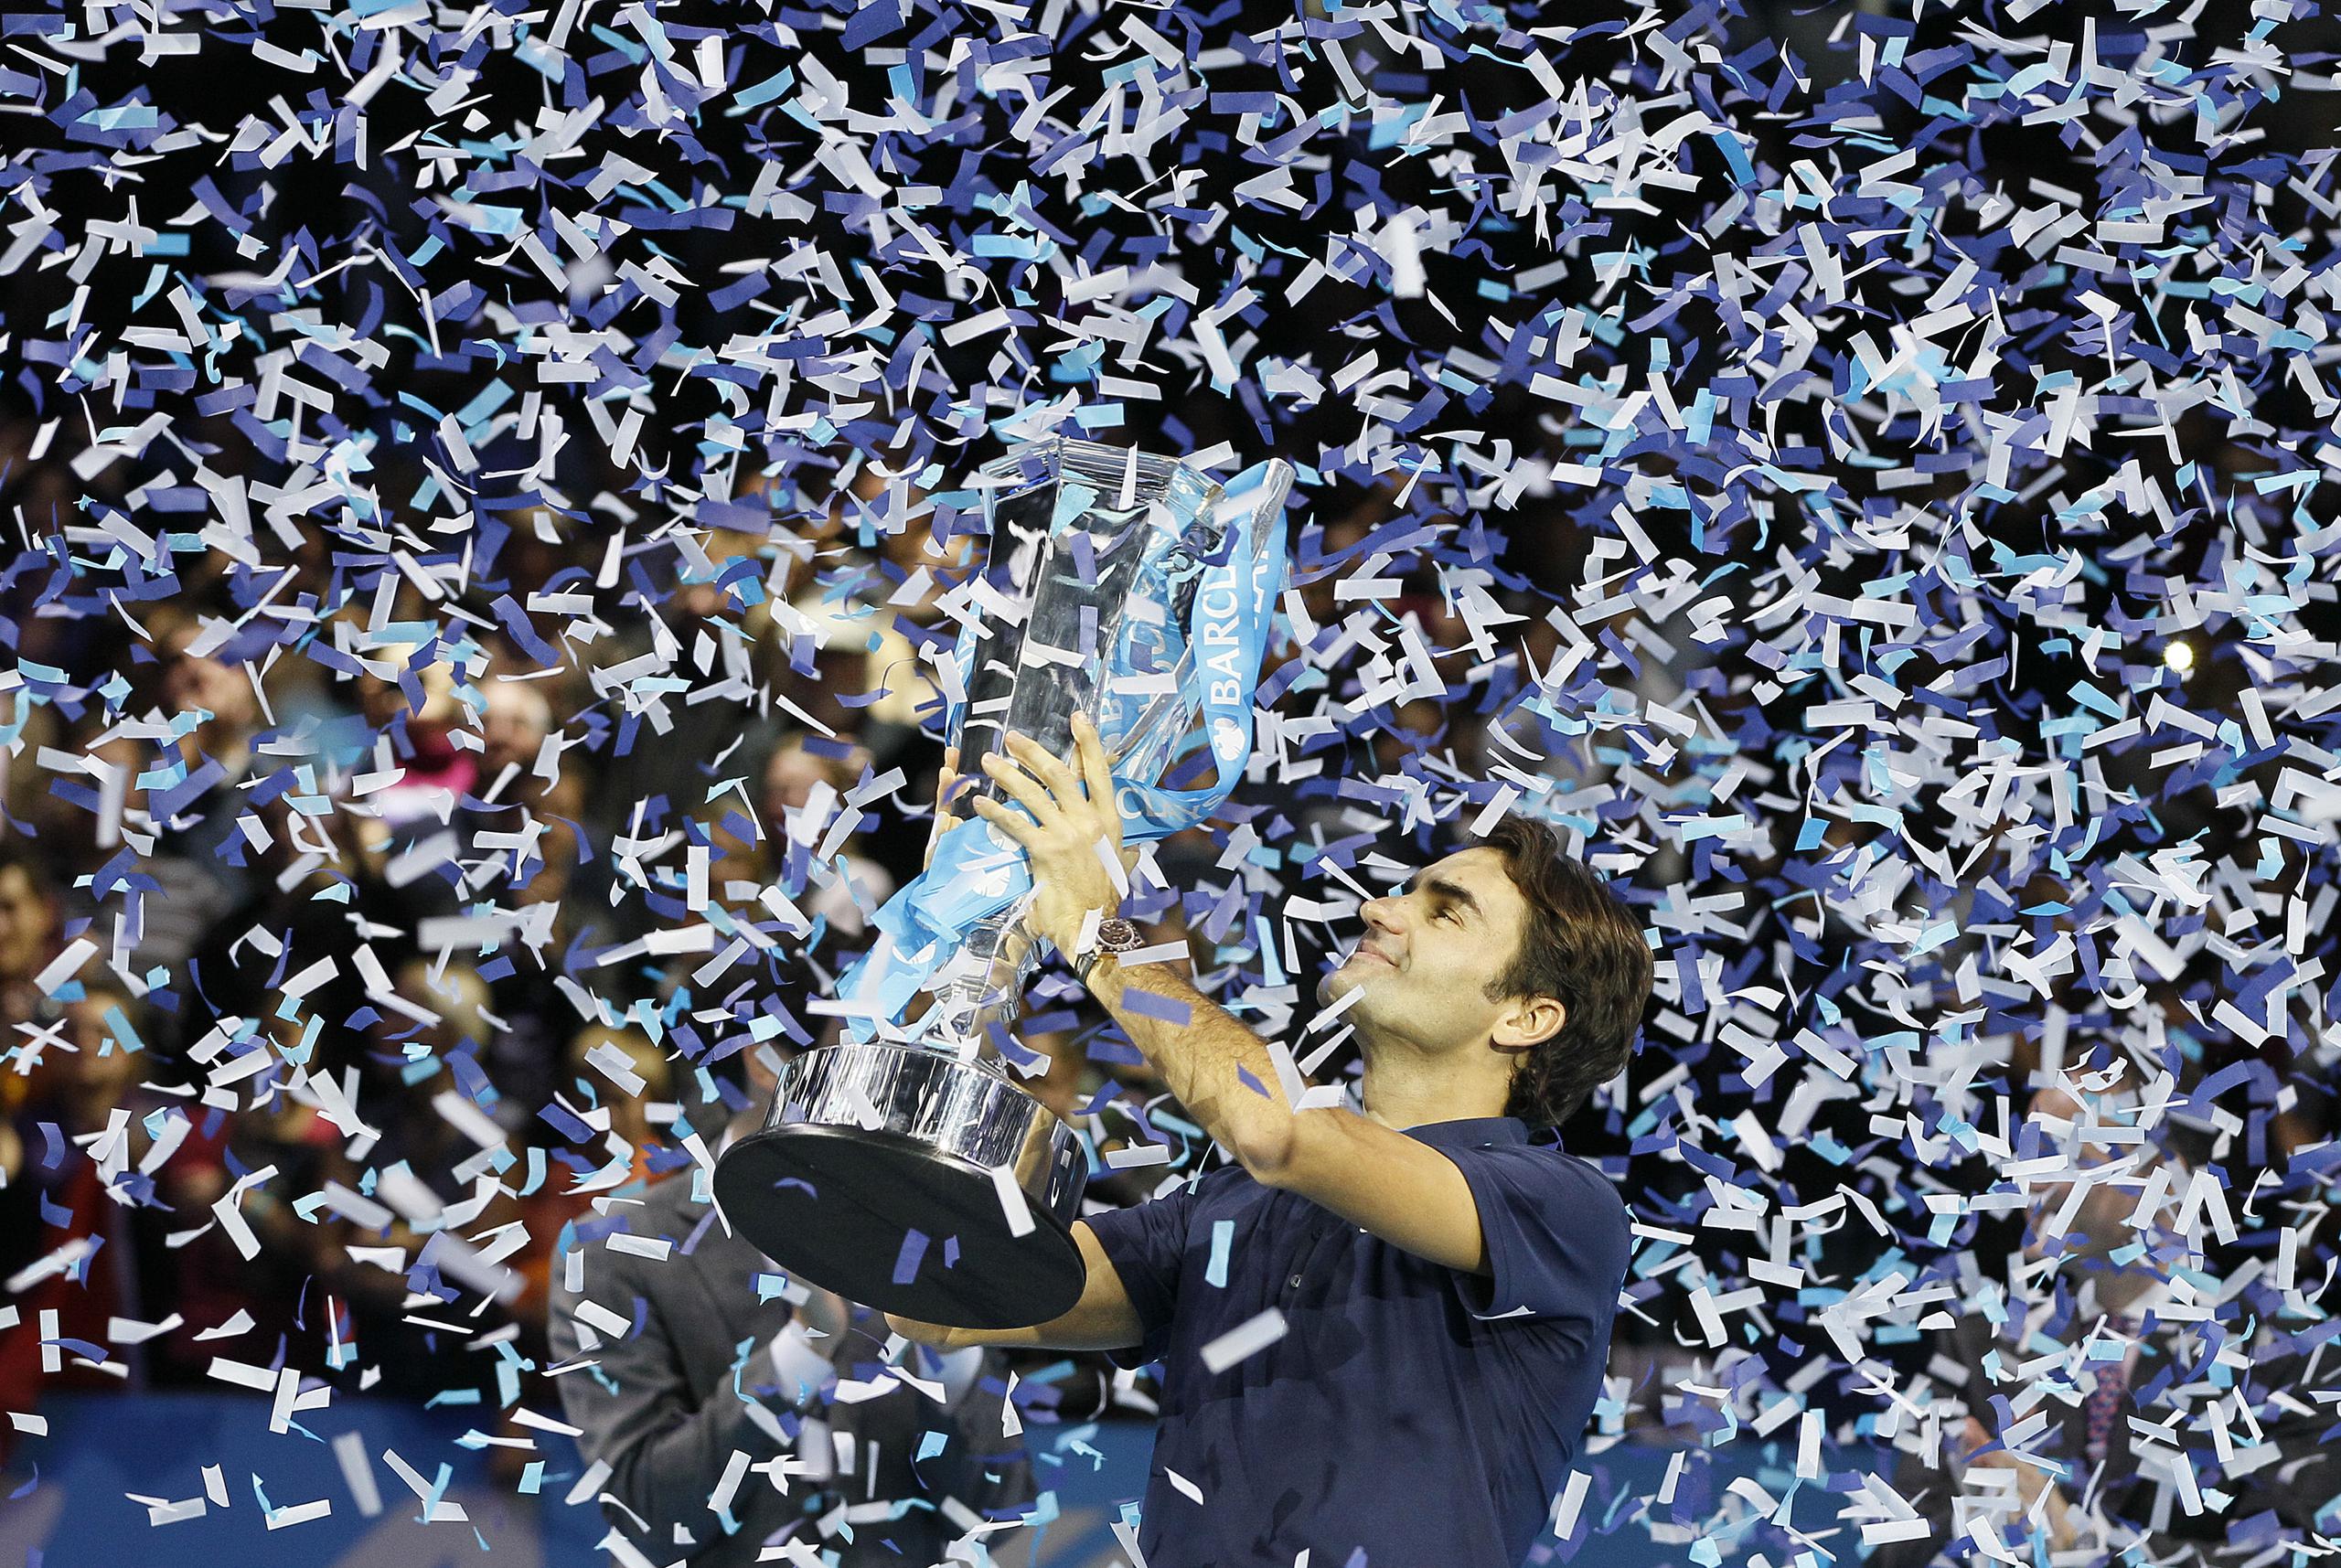 Roger Federer alza el trofeo de campeón luego de vencer al francés Jo-Wilfried Tsonga en la final de sencillos en las ATP World Tour Finals, en la Arena O2 de Londres, el domingo 27 de noviembre de 2011.